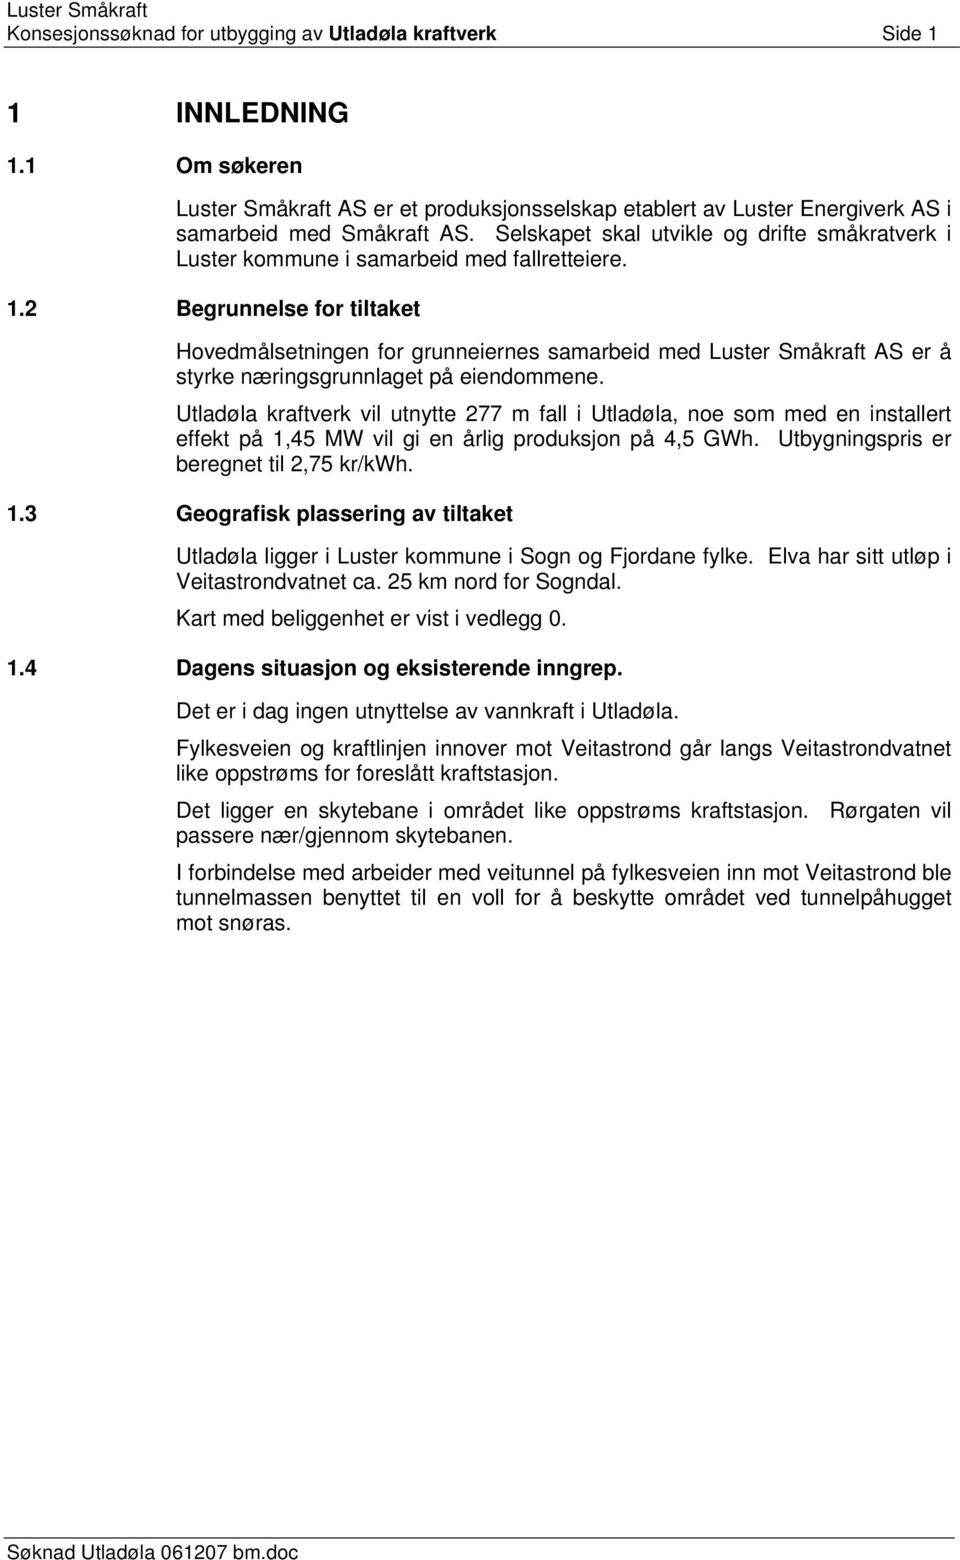 Selskapet skal utvikle og drifte småkratverk i Luster kommune i samarbeid med fallretteiere. 1.